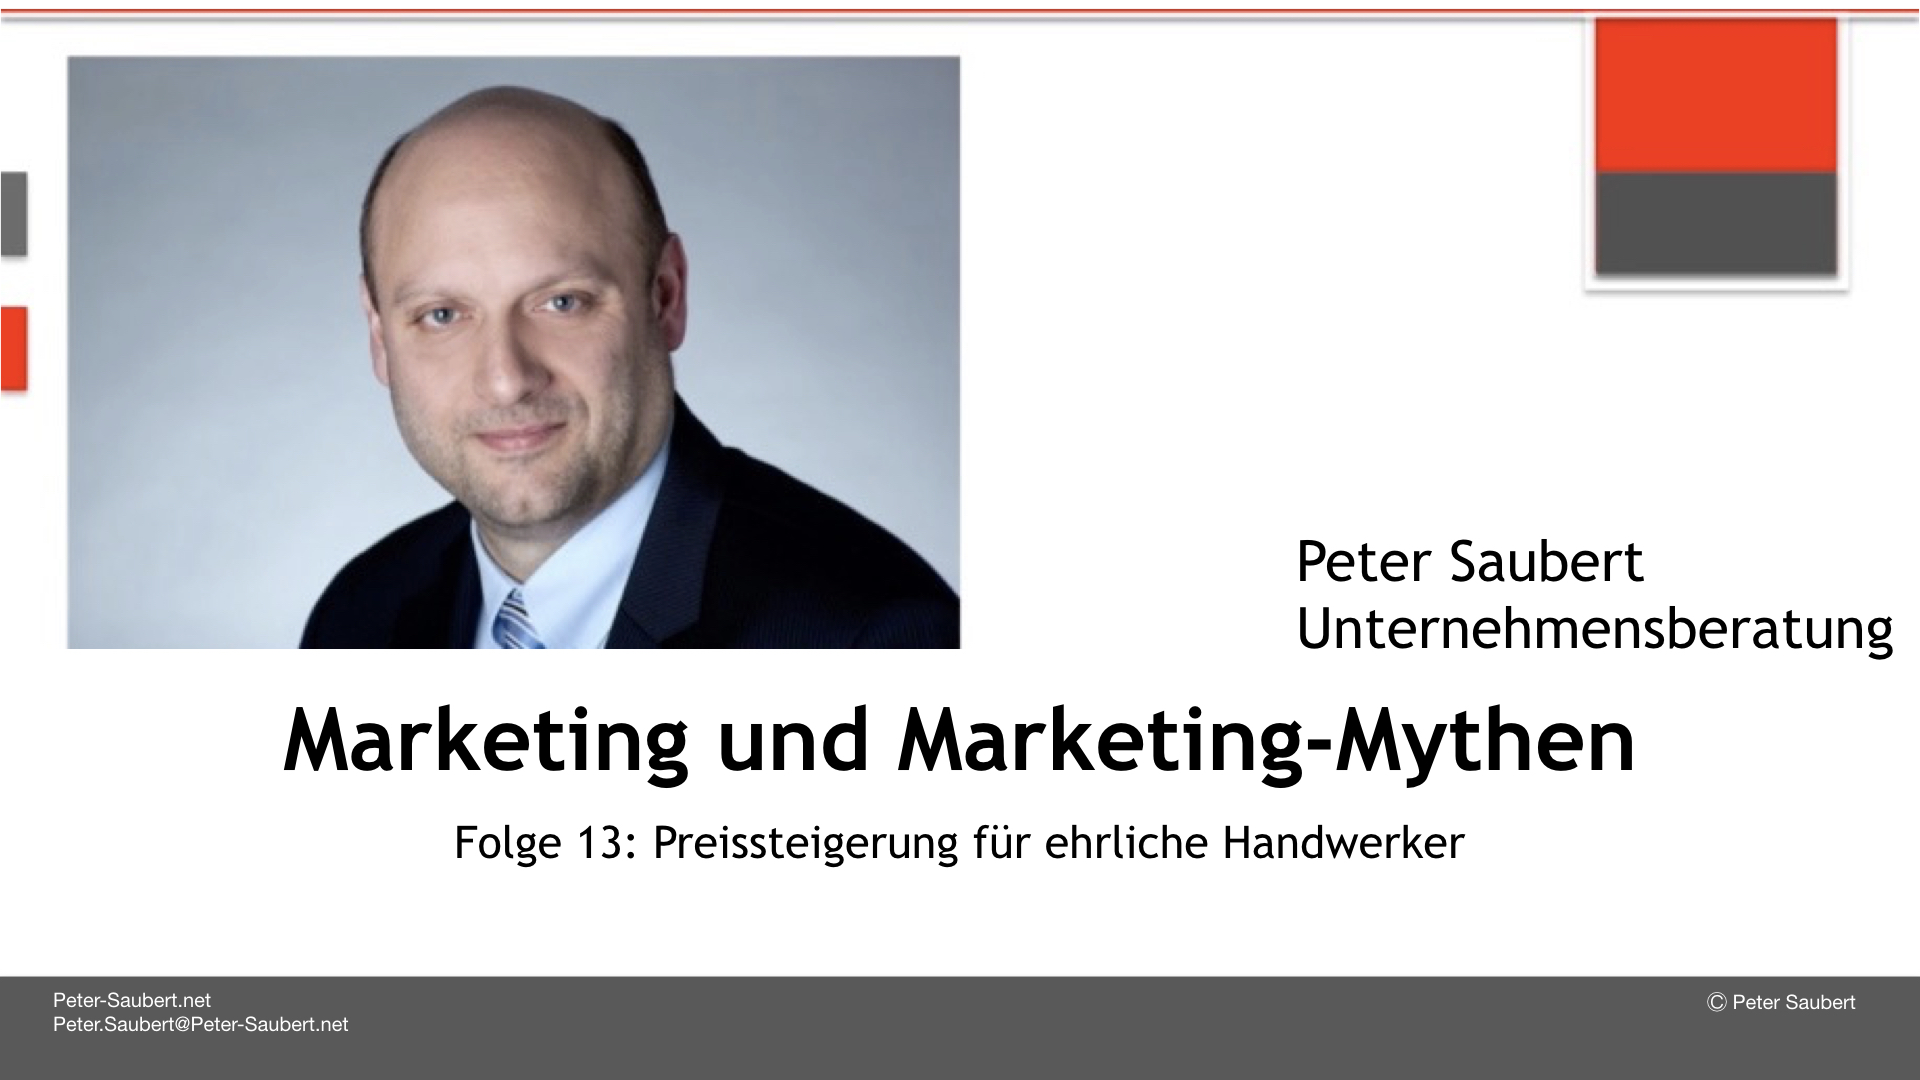 Marketing & Marketing-Mythen Folge 13 oder 12a: Wie Handwerker Preissteigerungen durchsetzen können